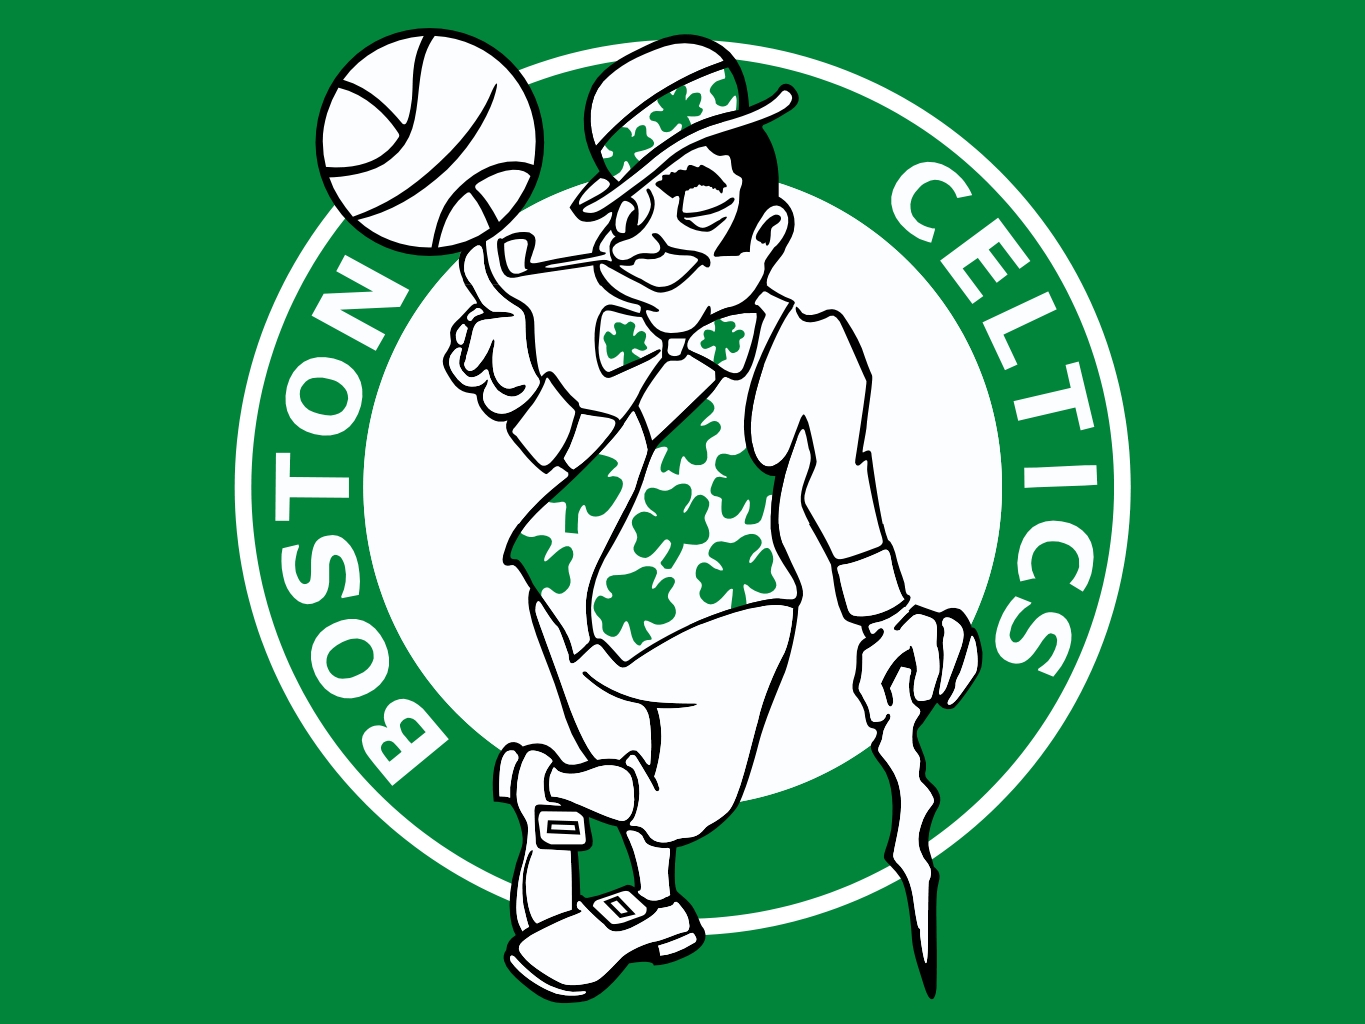 Champions Fantastic Stadium Wallpaper Boston Celtics Soccer